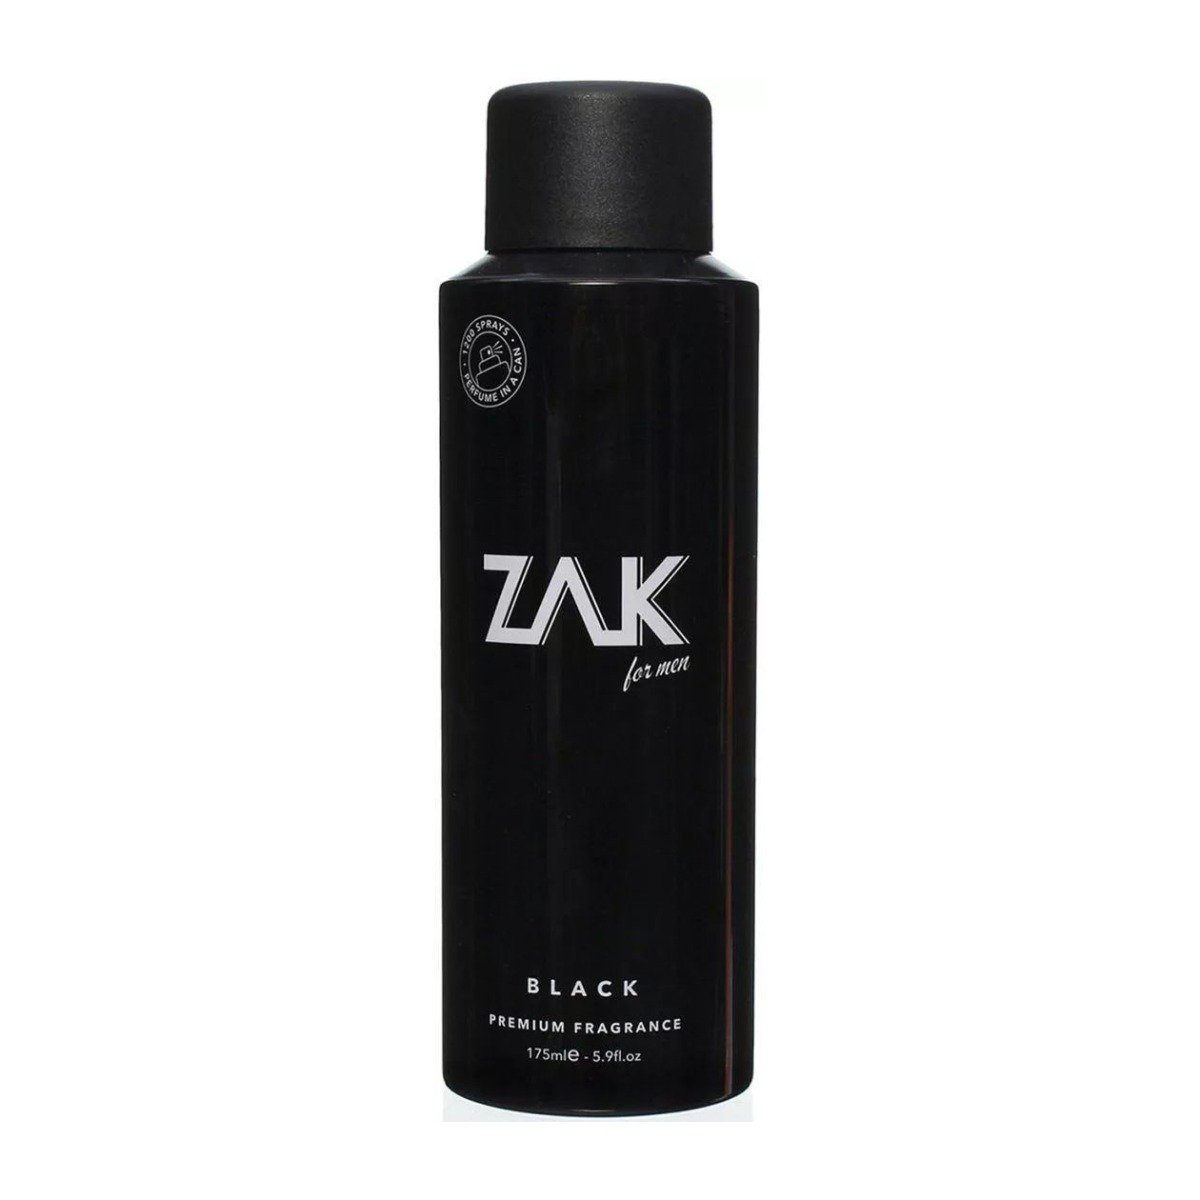 Zak For Men Black EDT Fragrance Spray – 175ml - Bloom Pharmacy